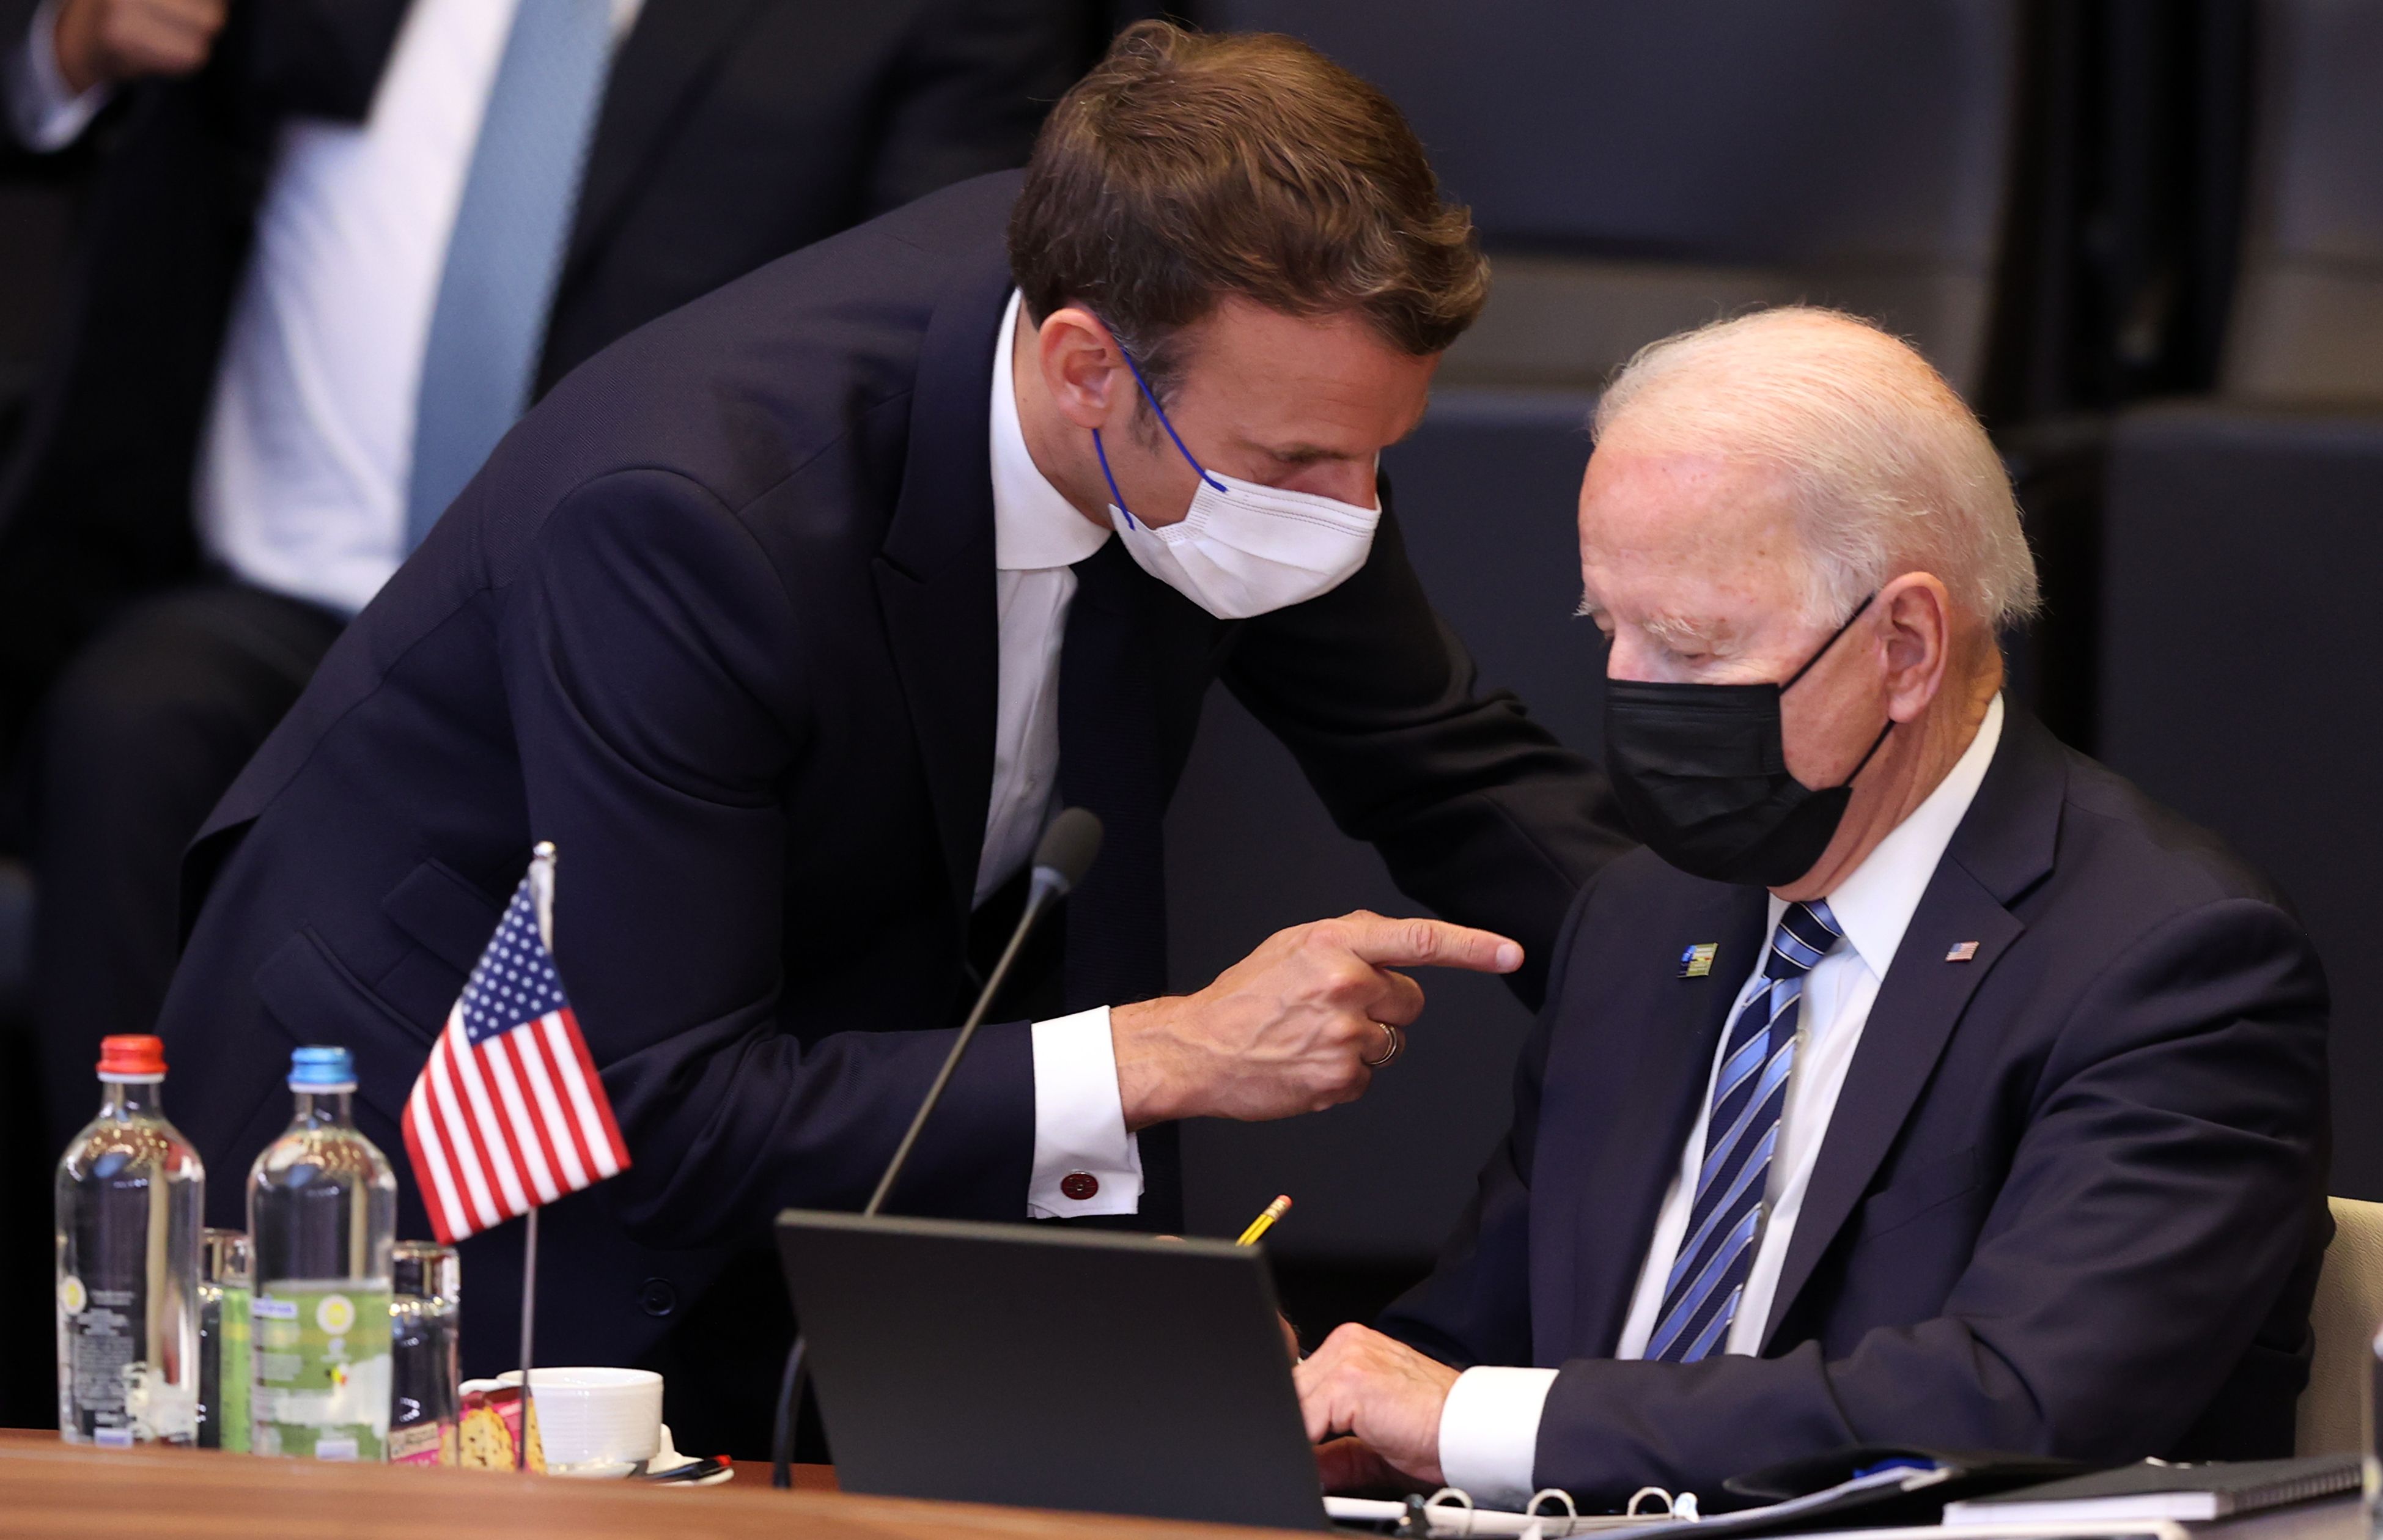 Biden and Macron